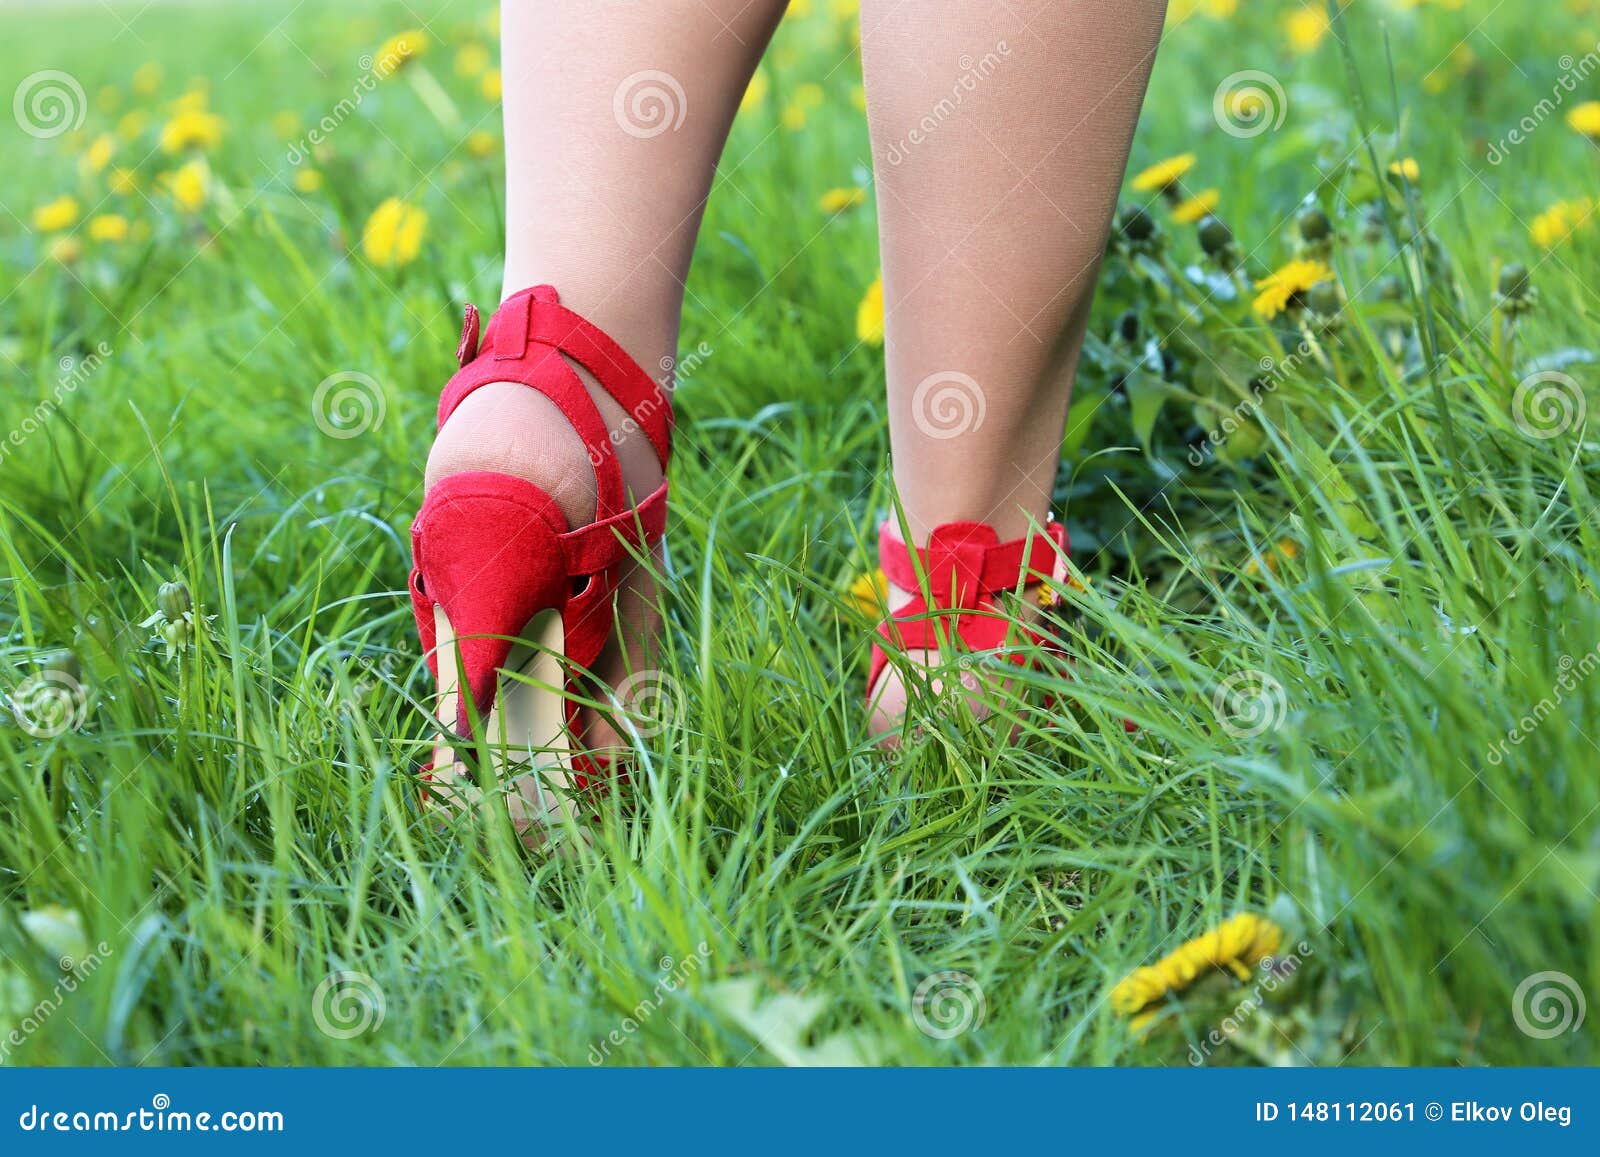 8 Pairs) High Heel Protectors Heel Savers,Heel Repair Caps Covers for Heels  Pumps Sandals Walking on Grass Cracks Floor (S,M,L,XL Size) : Amazon.in:  Shoes & Handbags